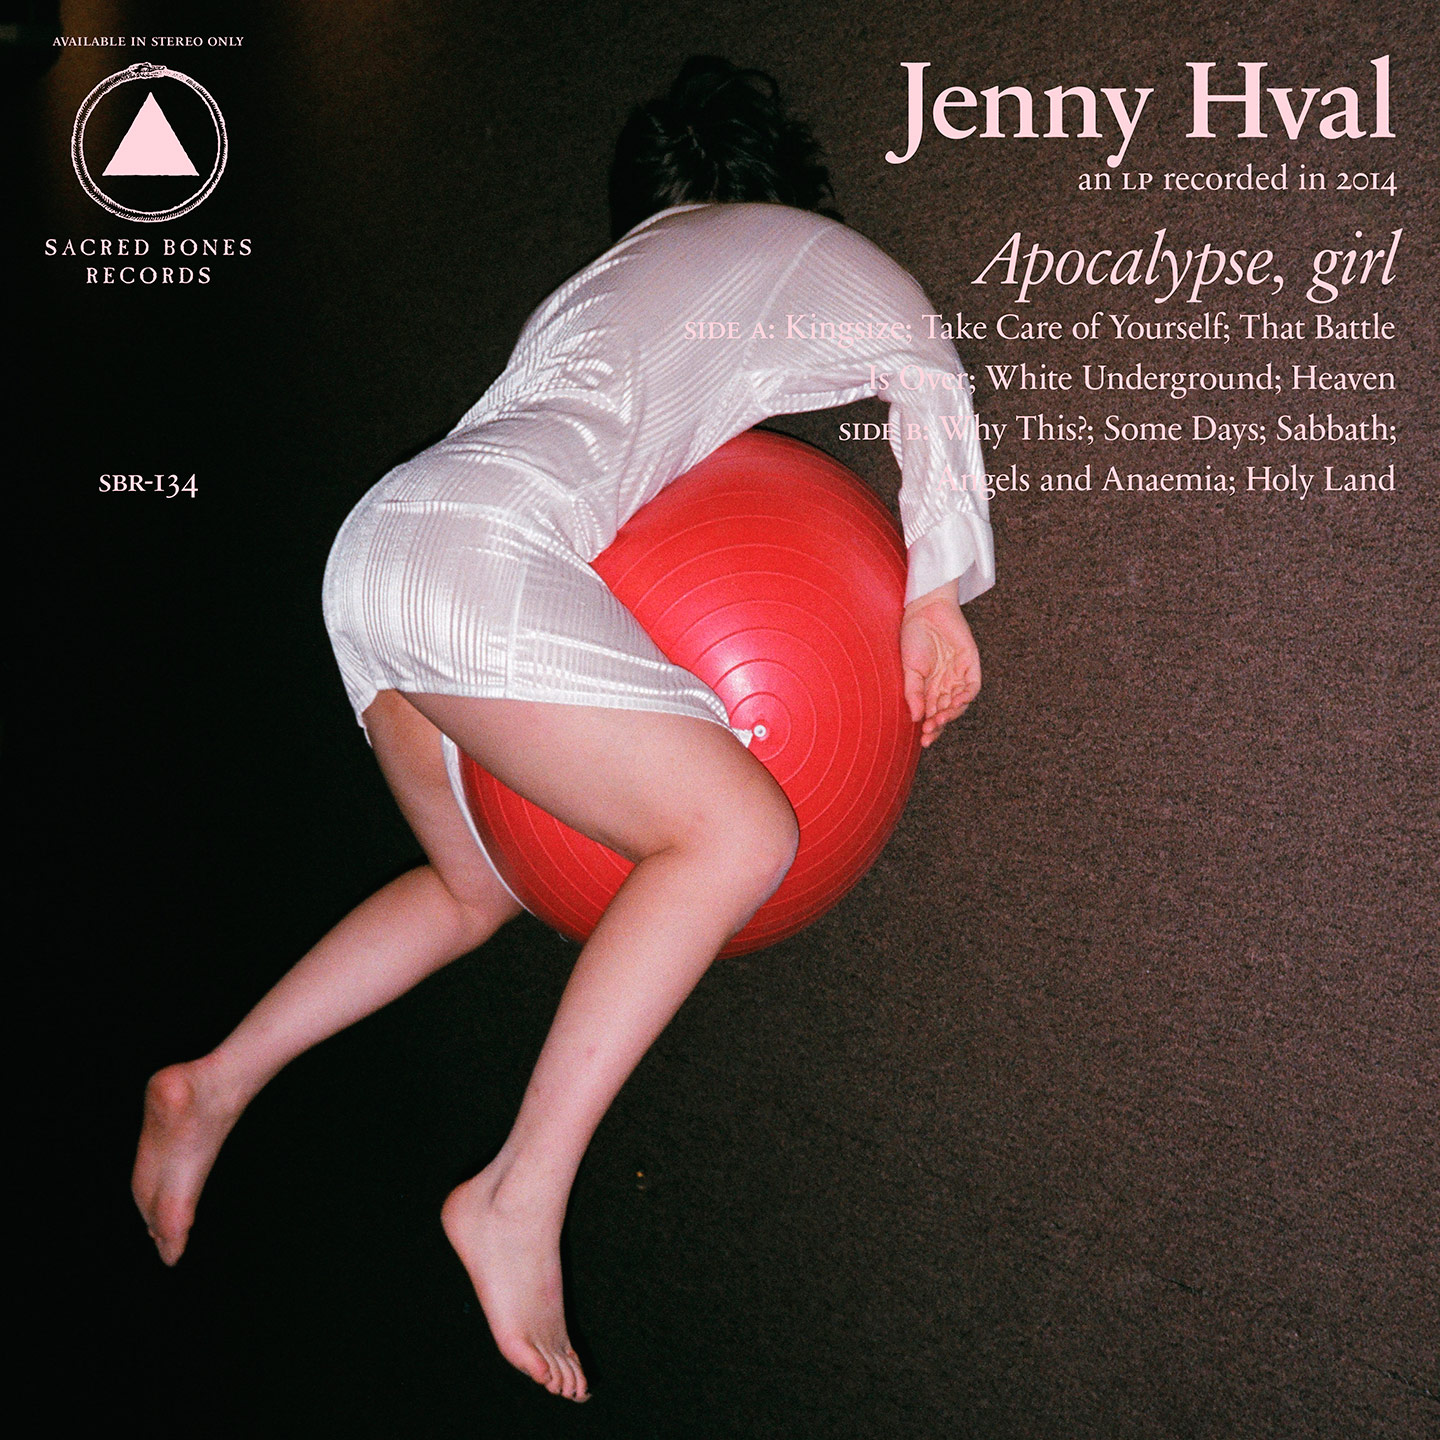 Apocalypse, girl by Jenny Hval